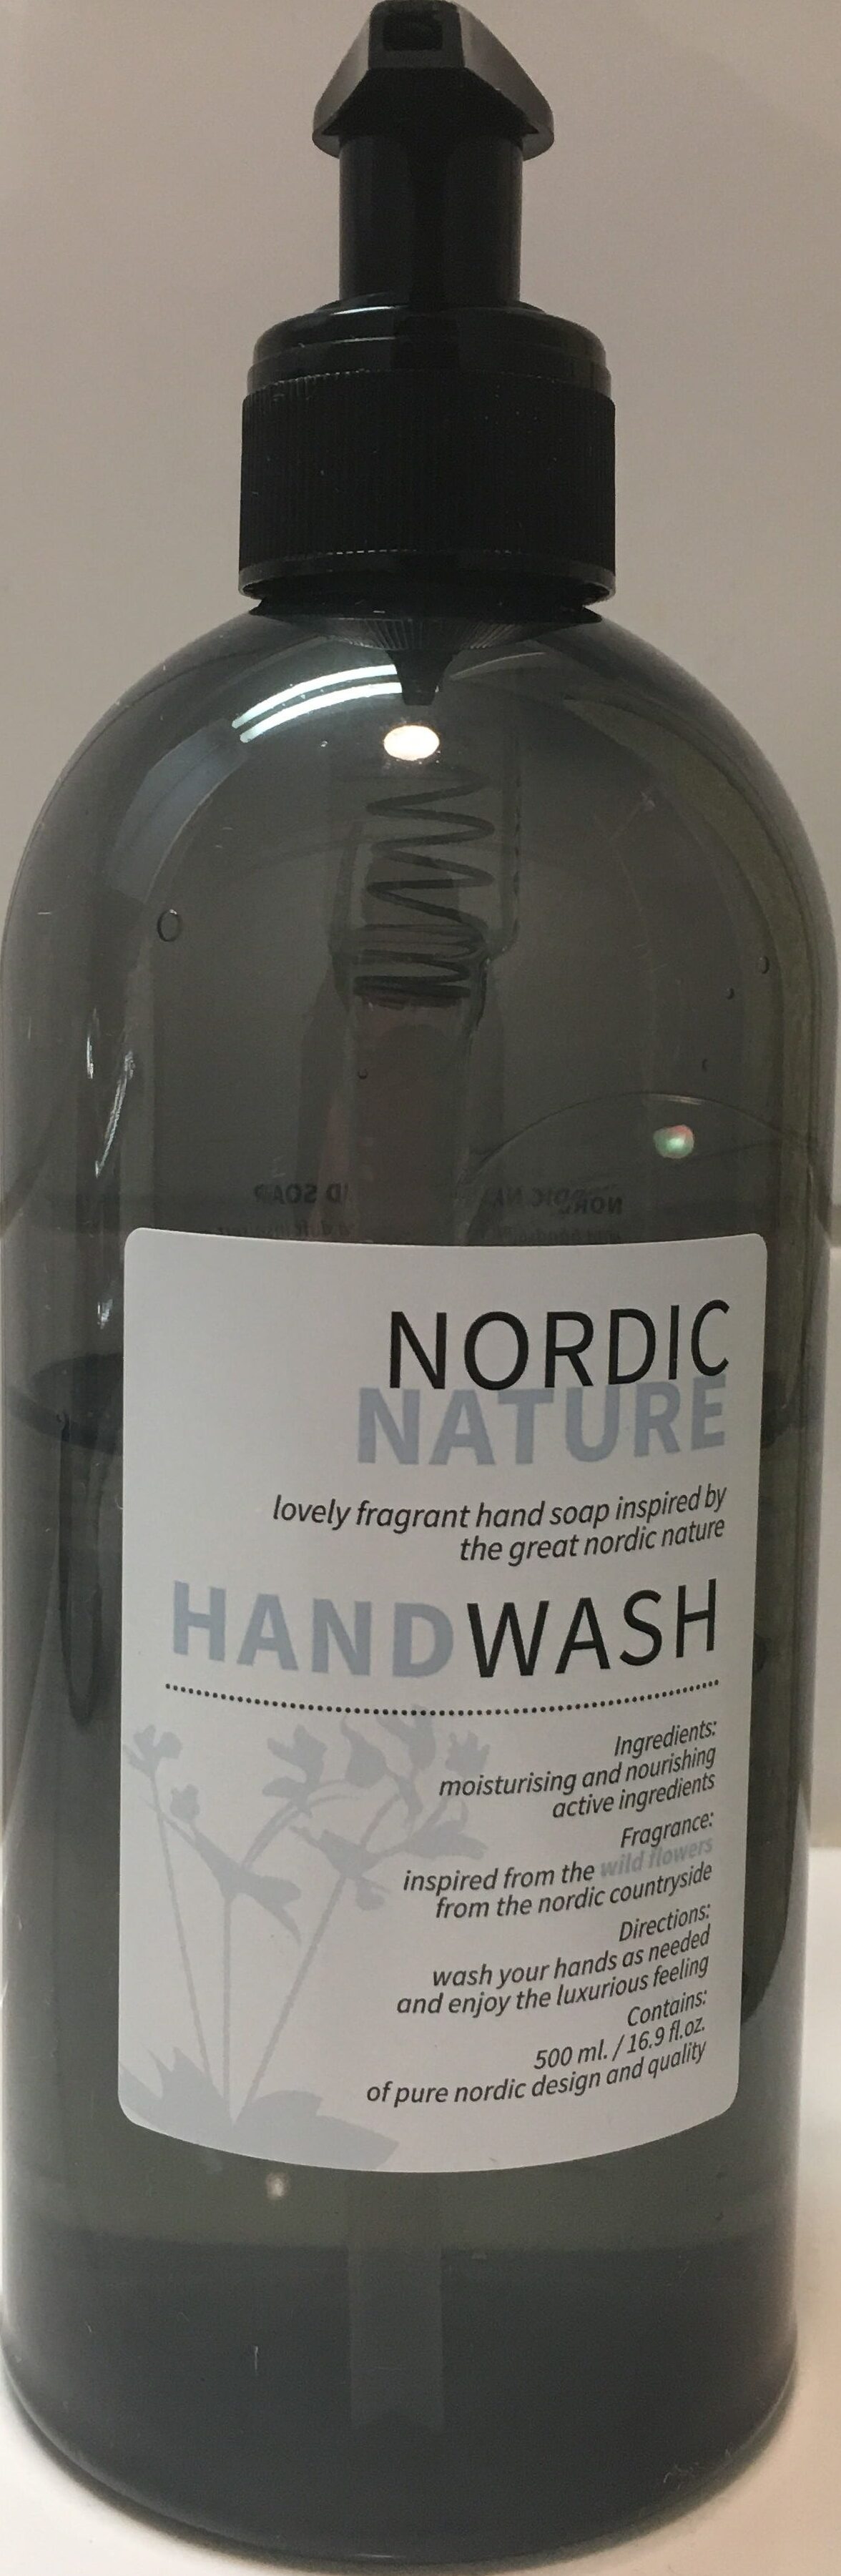 Hand Wash - Produit - en